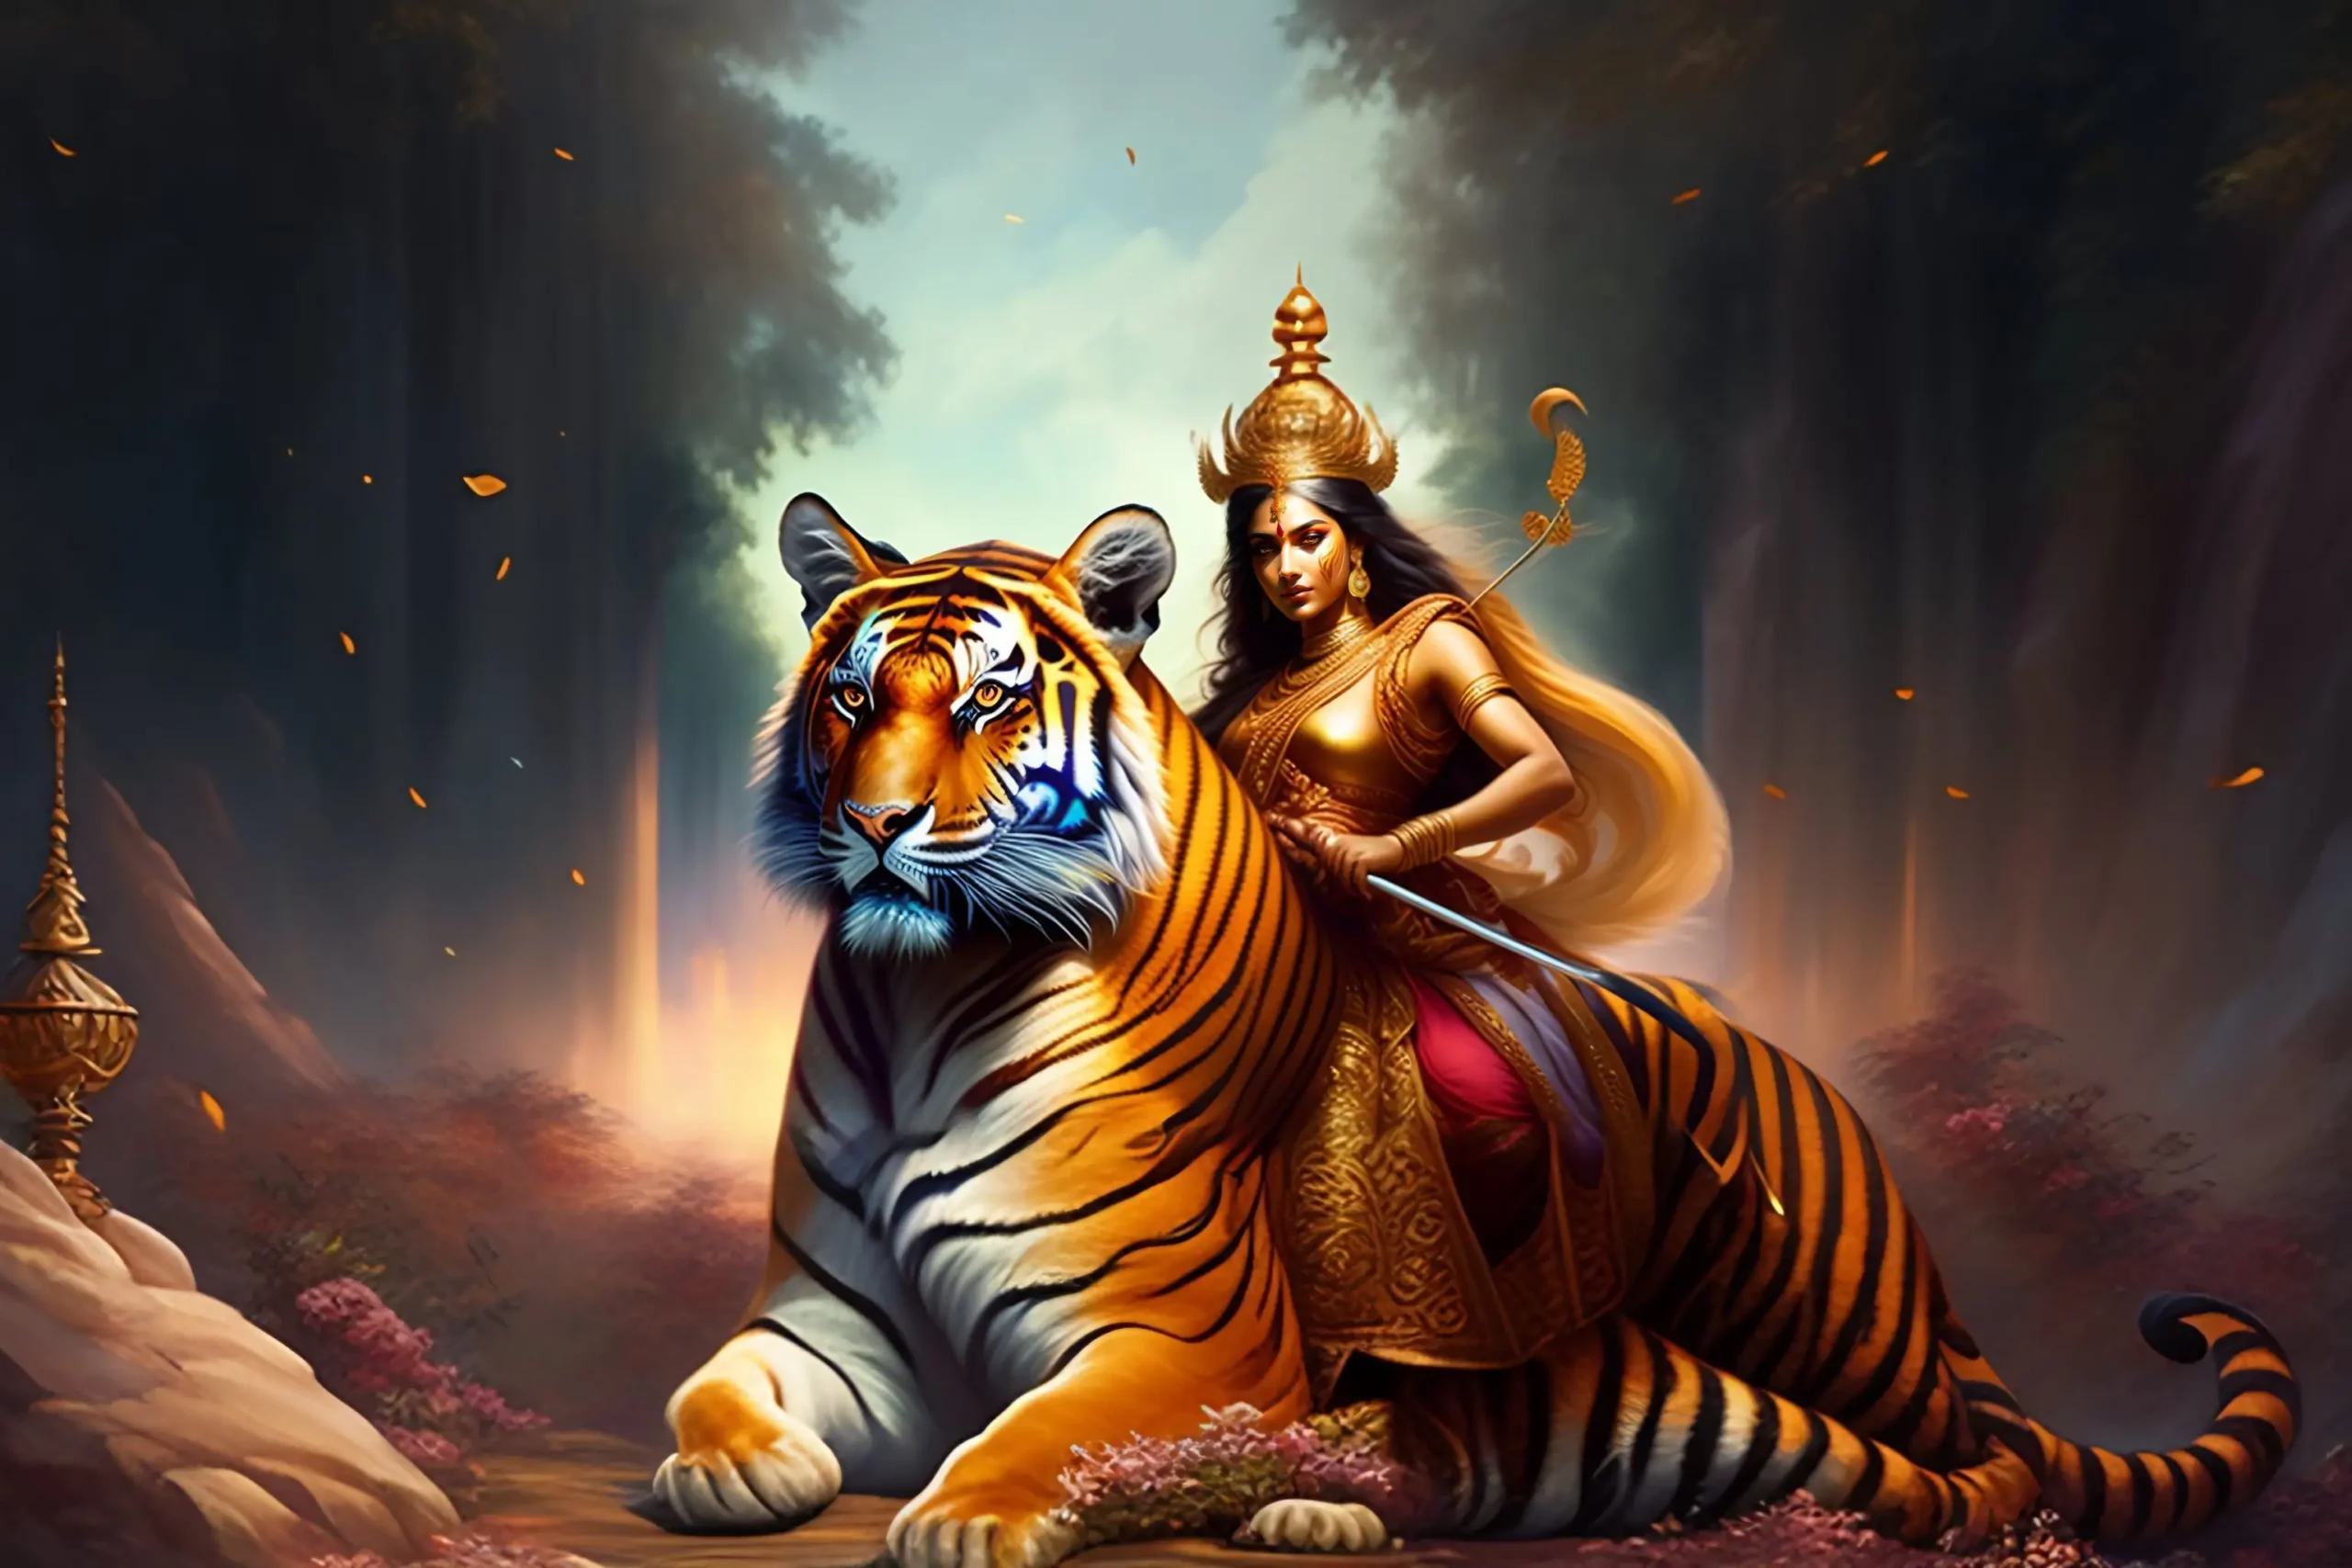 Hindu-Goddess-Durga